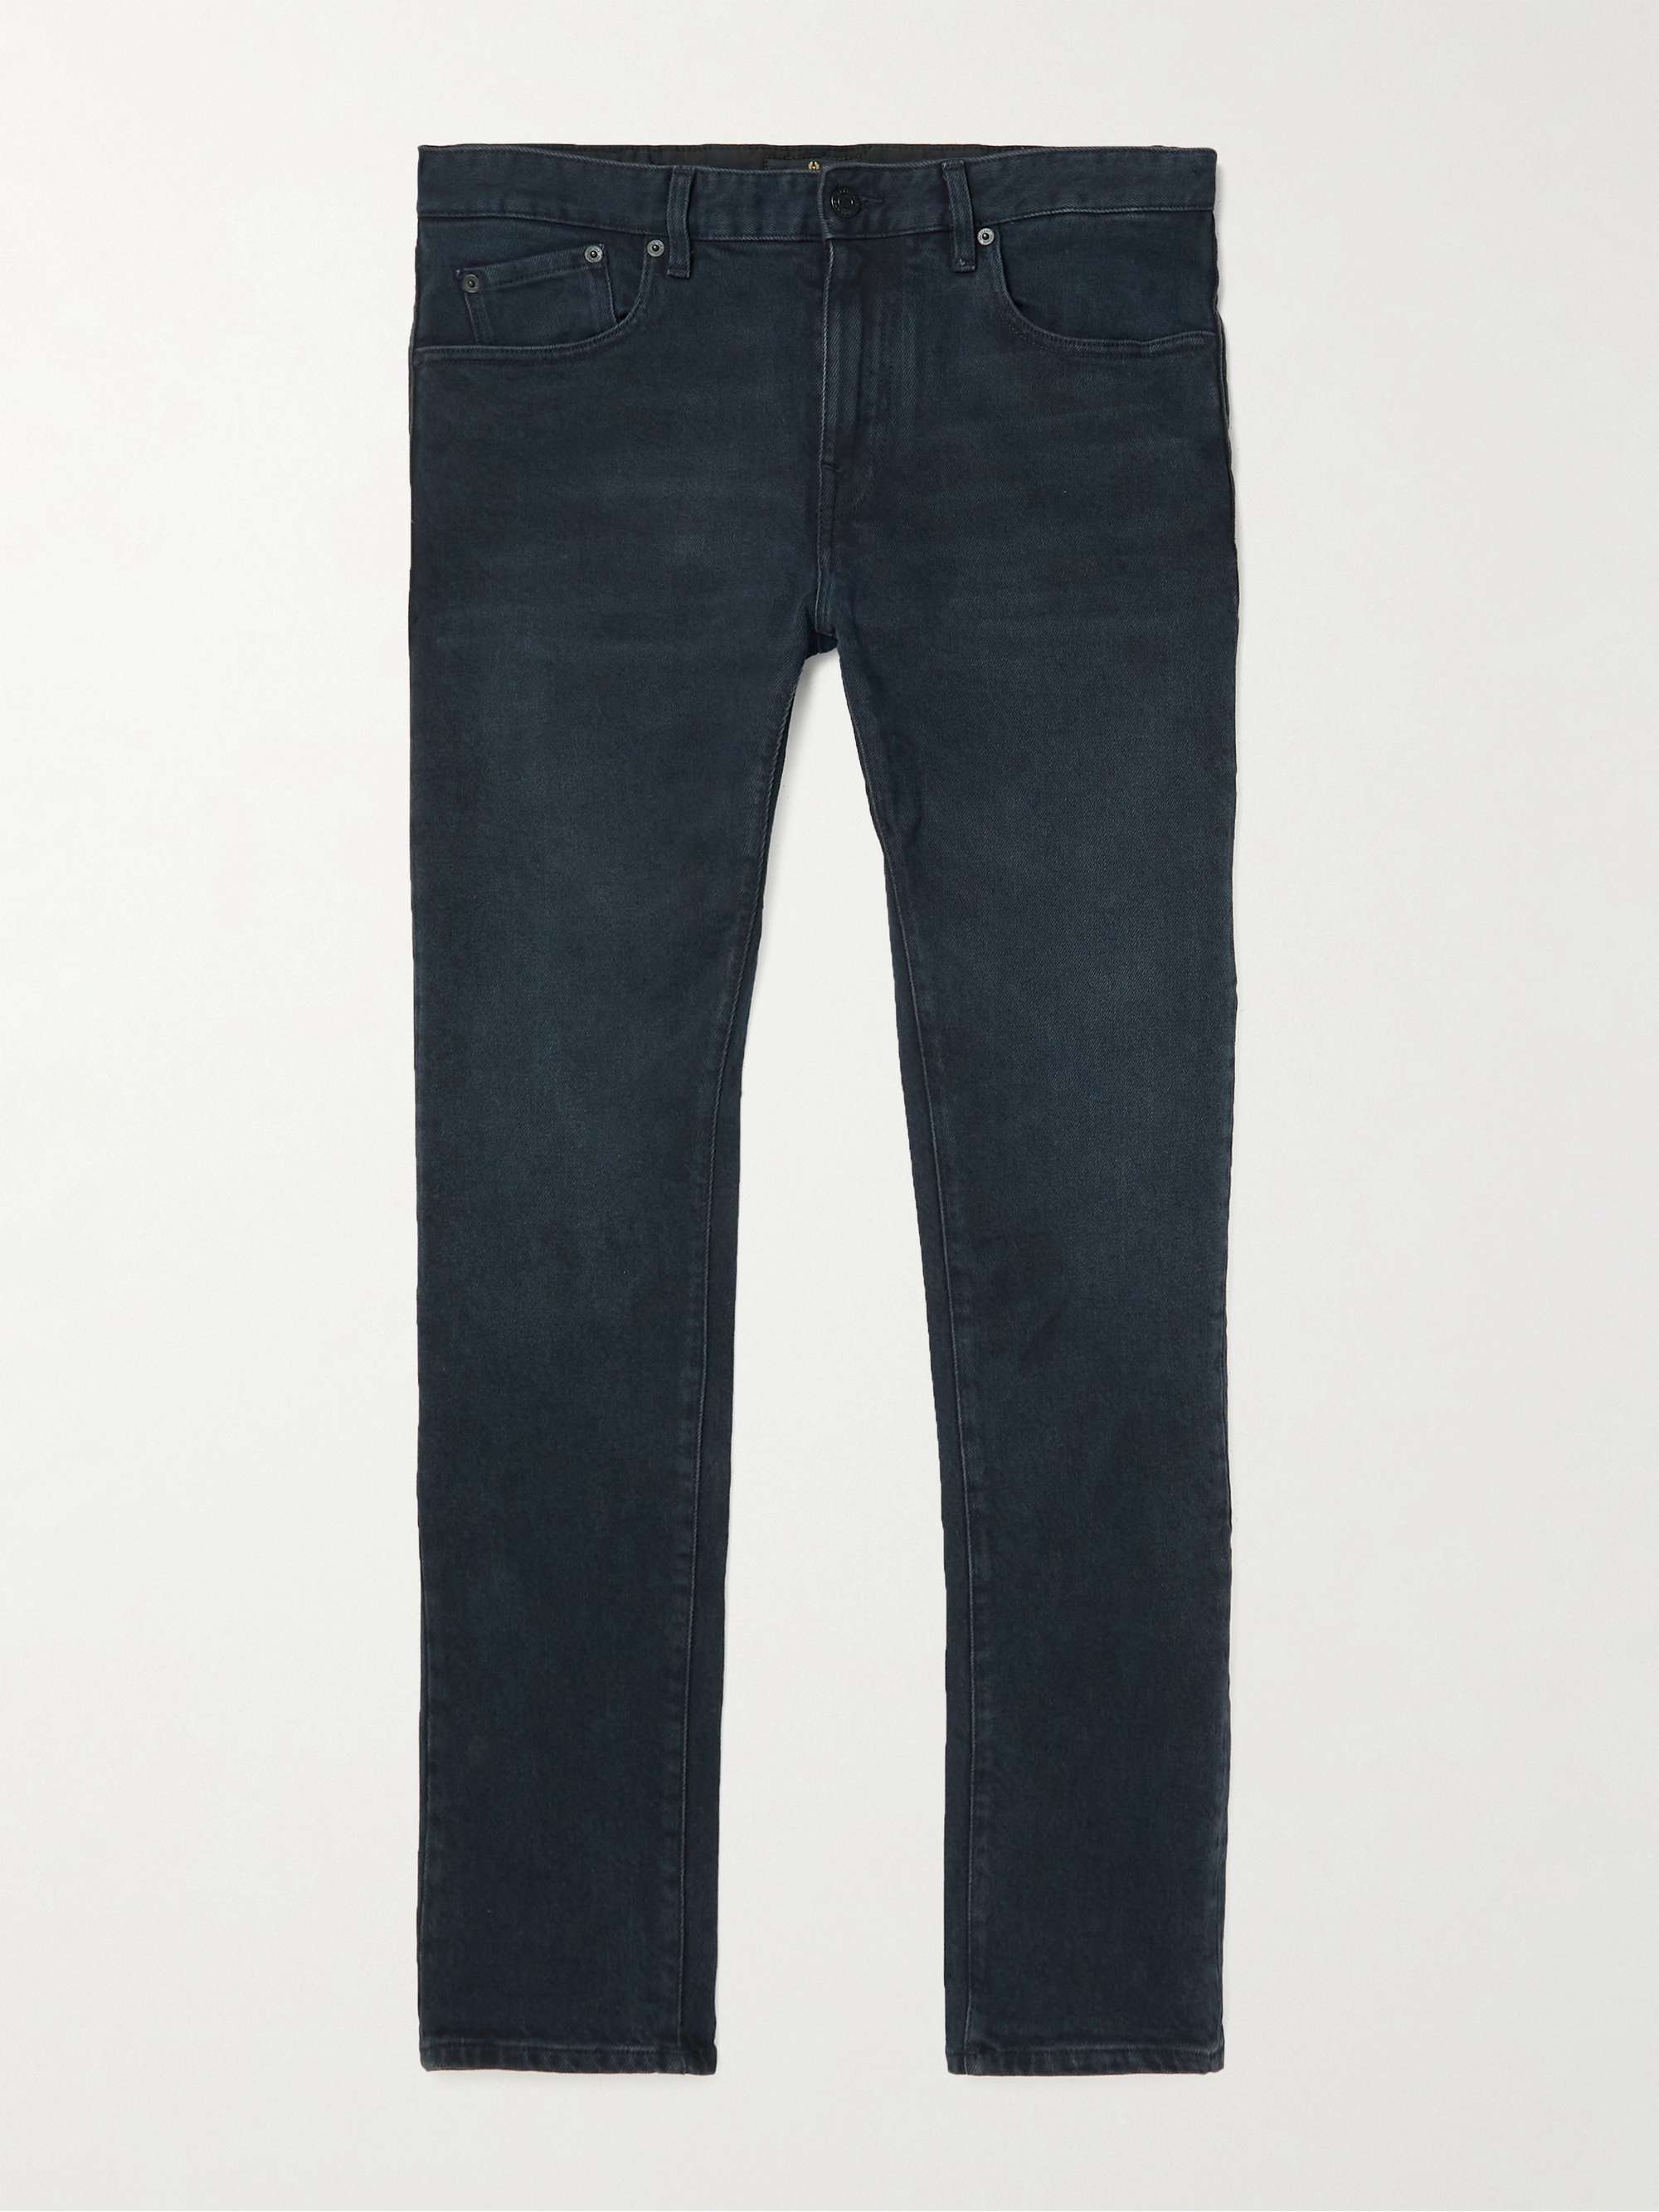 BELSTAFF Longton Slim-Fit Washed Jeans for Men | MR PORTER